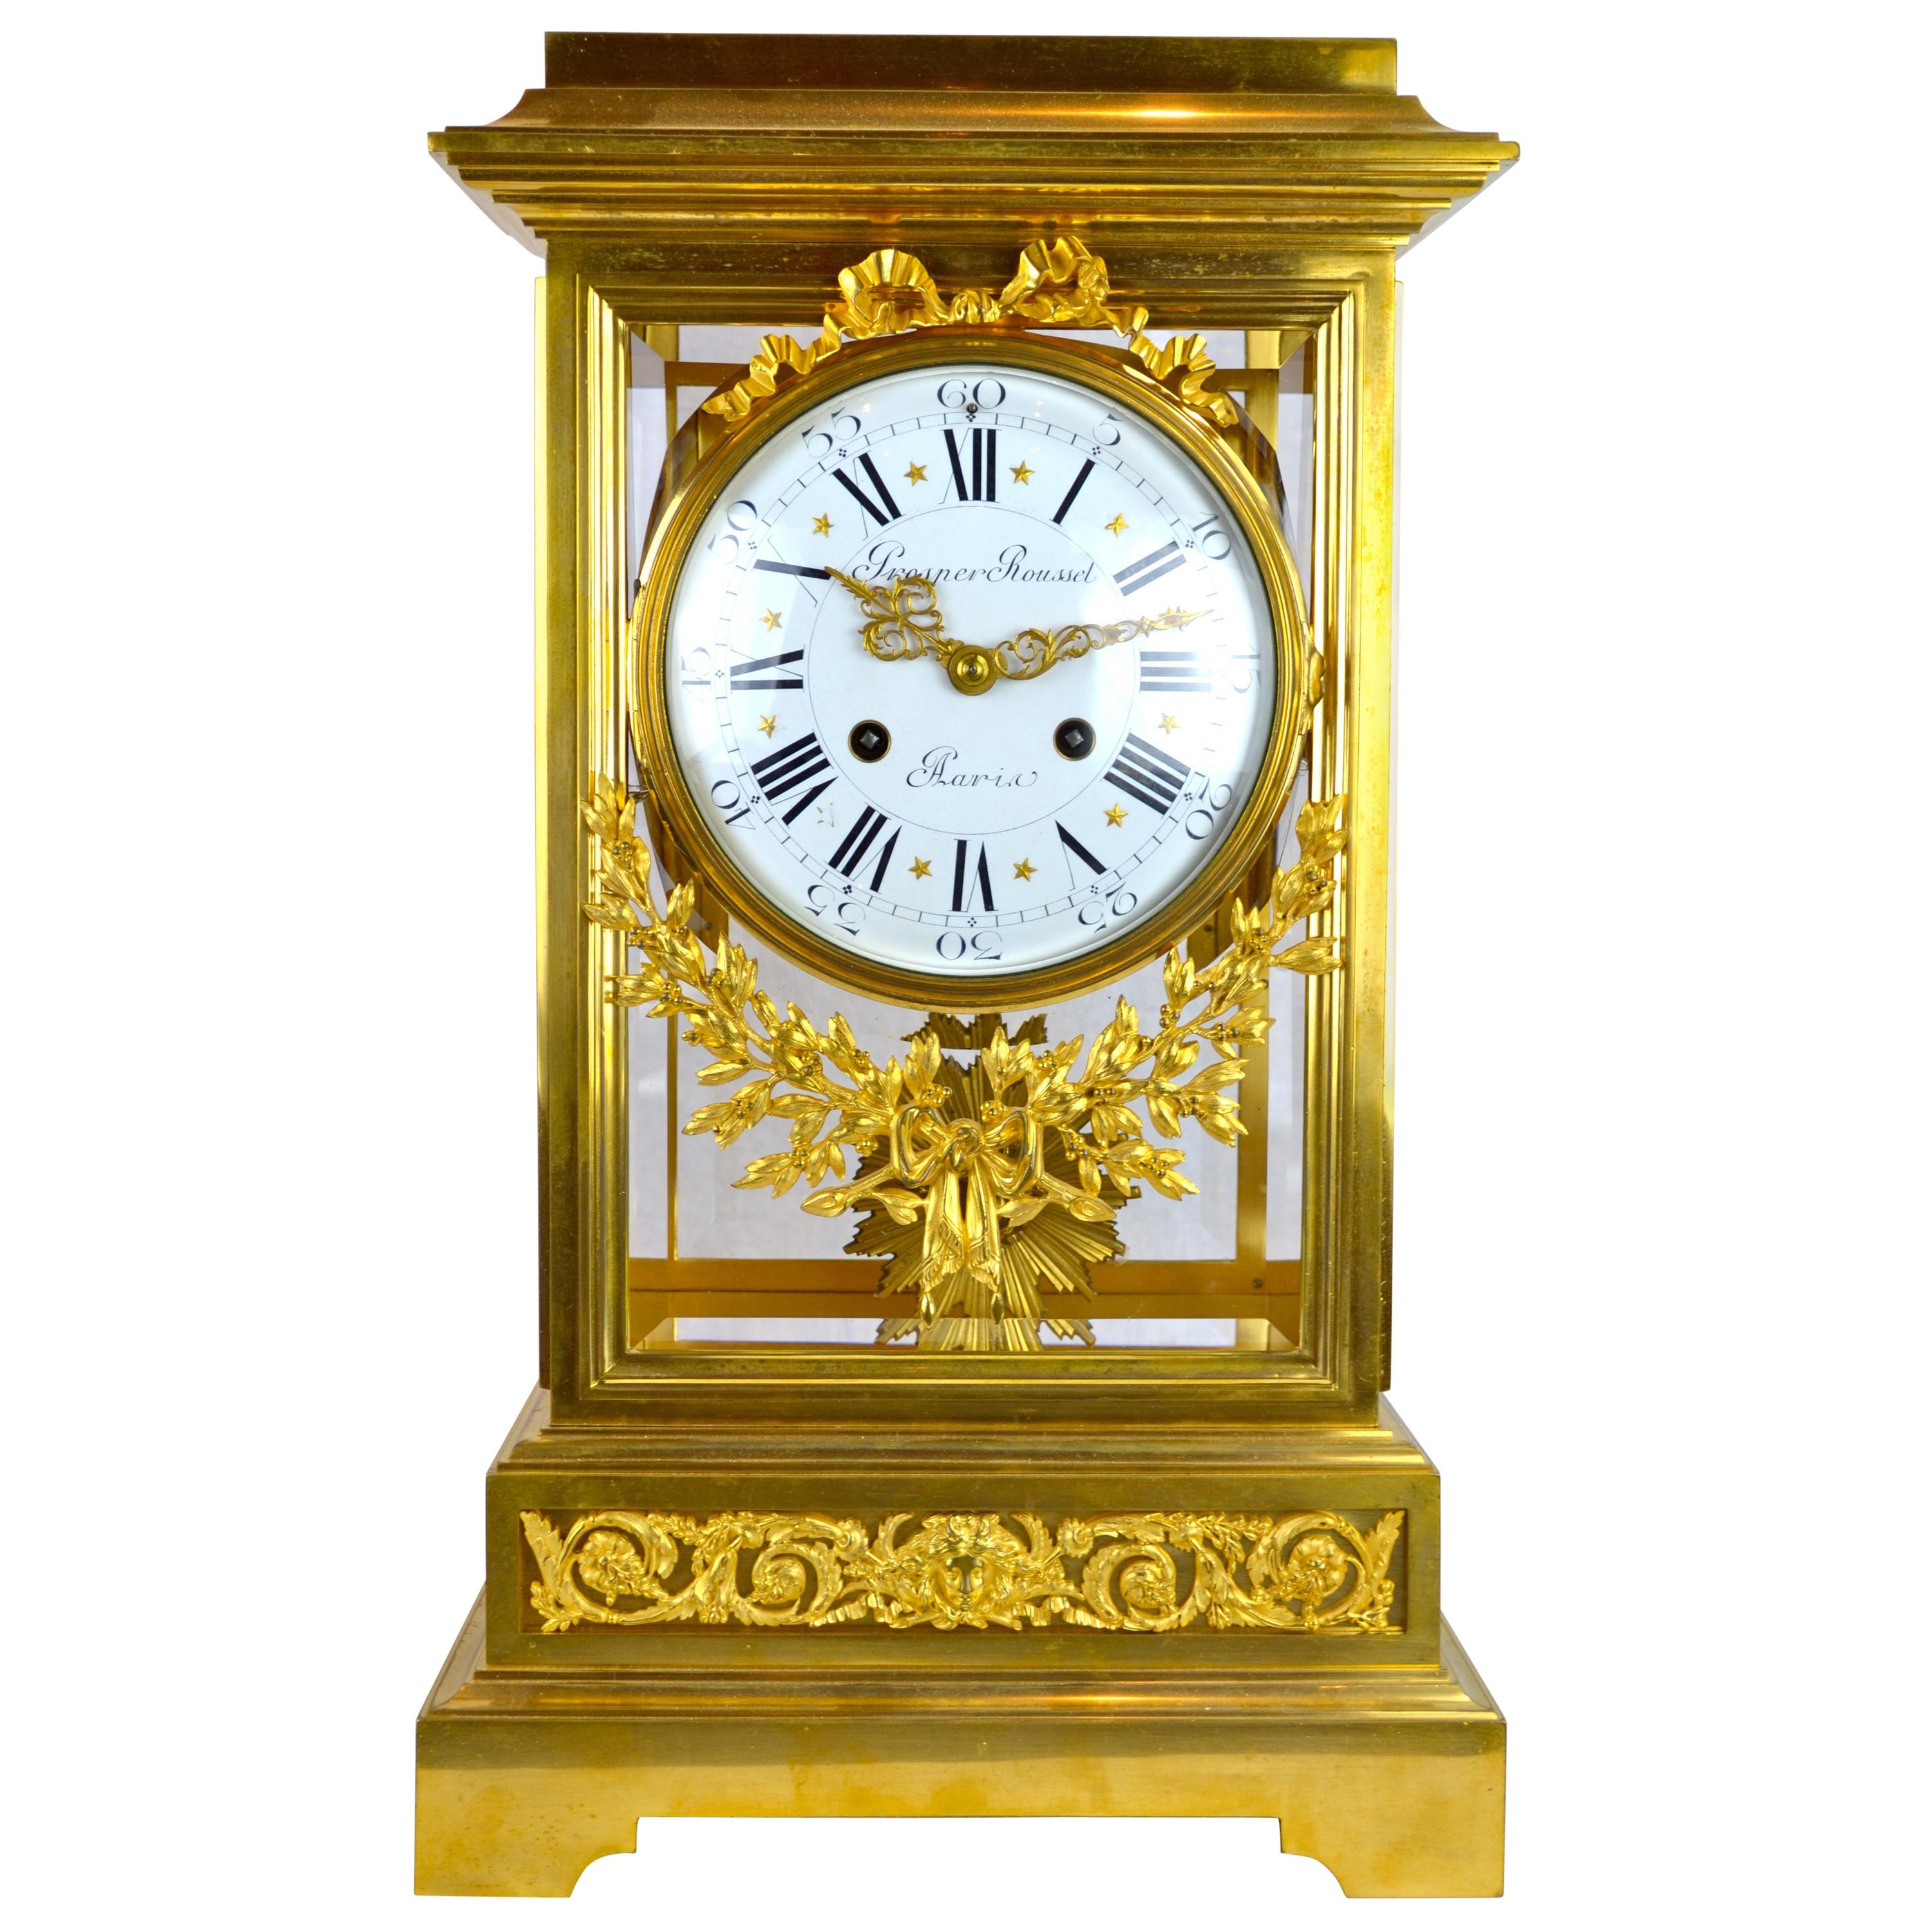 Horloge régulateur en bronze doré de style Louis XVI du 19ème siècle par Prosper Roussel